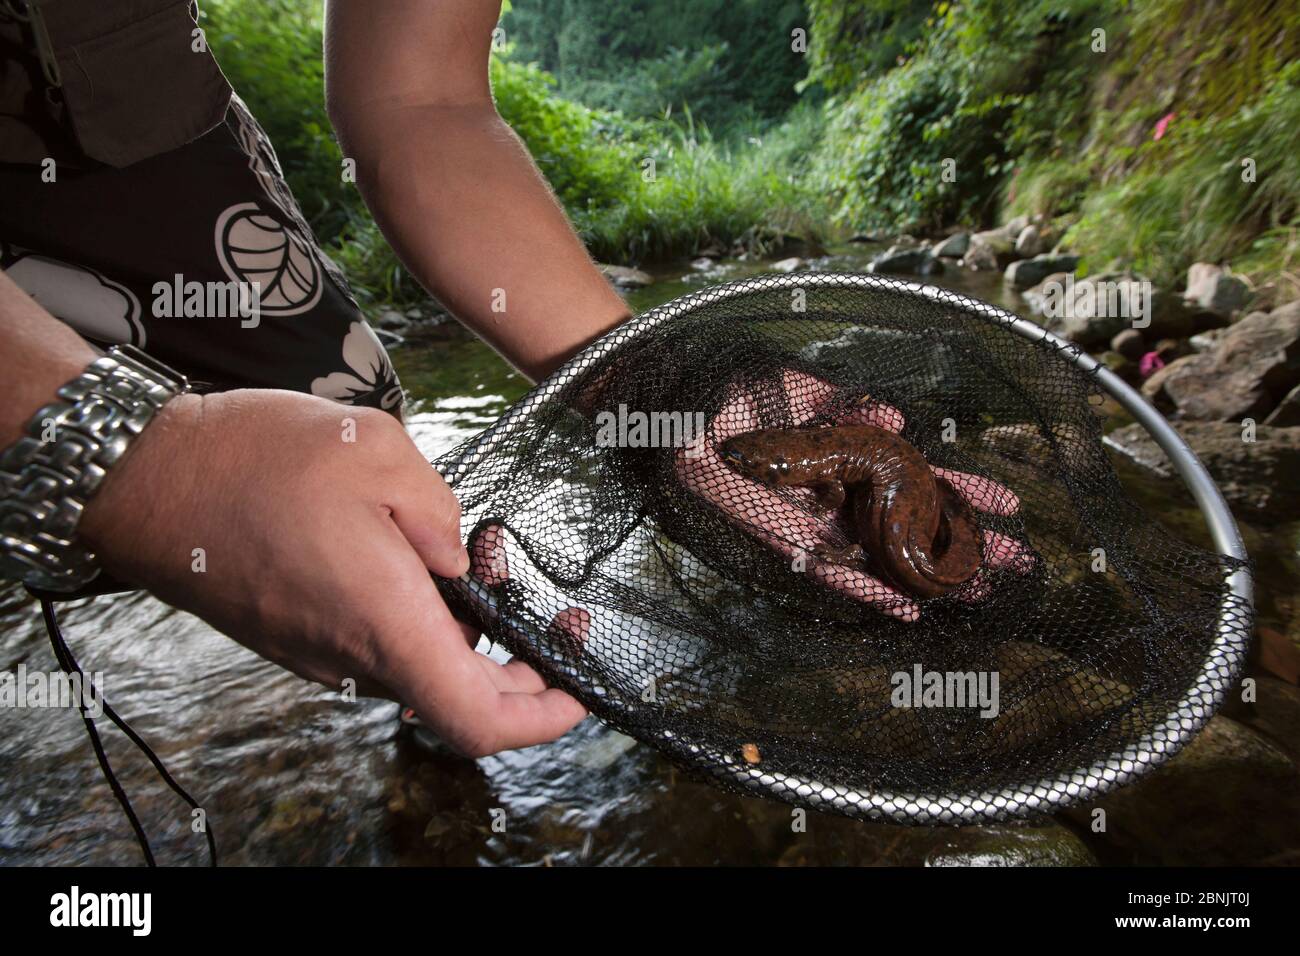 Chercheur Professeur Sumio Okada avec la salamandre japonaise (Andrias japonicus) Honshu, Japon. Août 2010. Banque D'Images